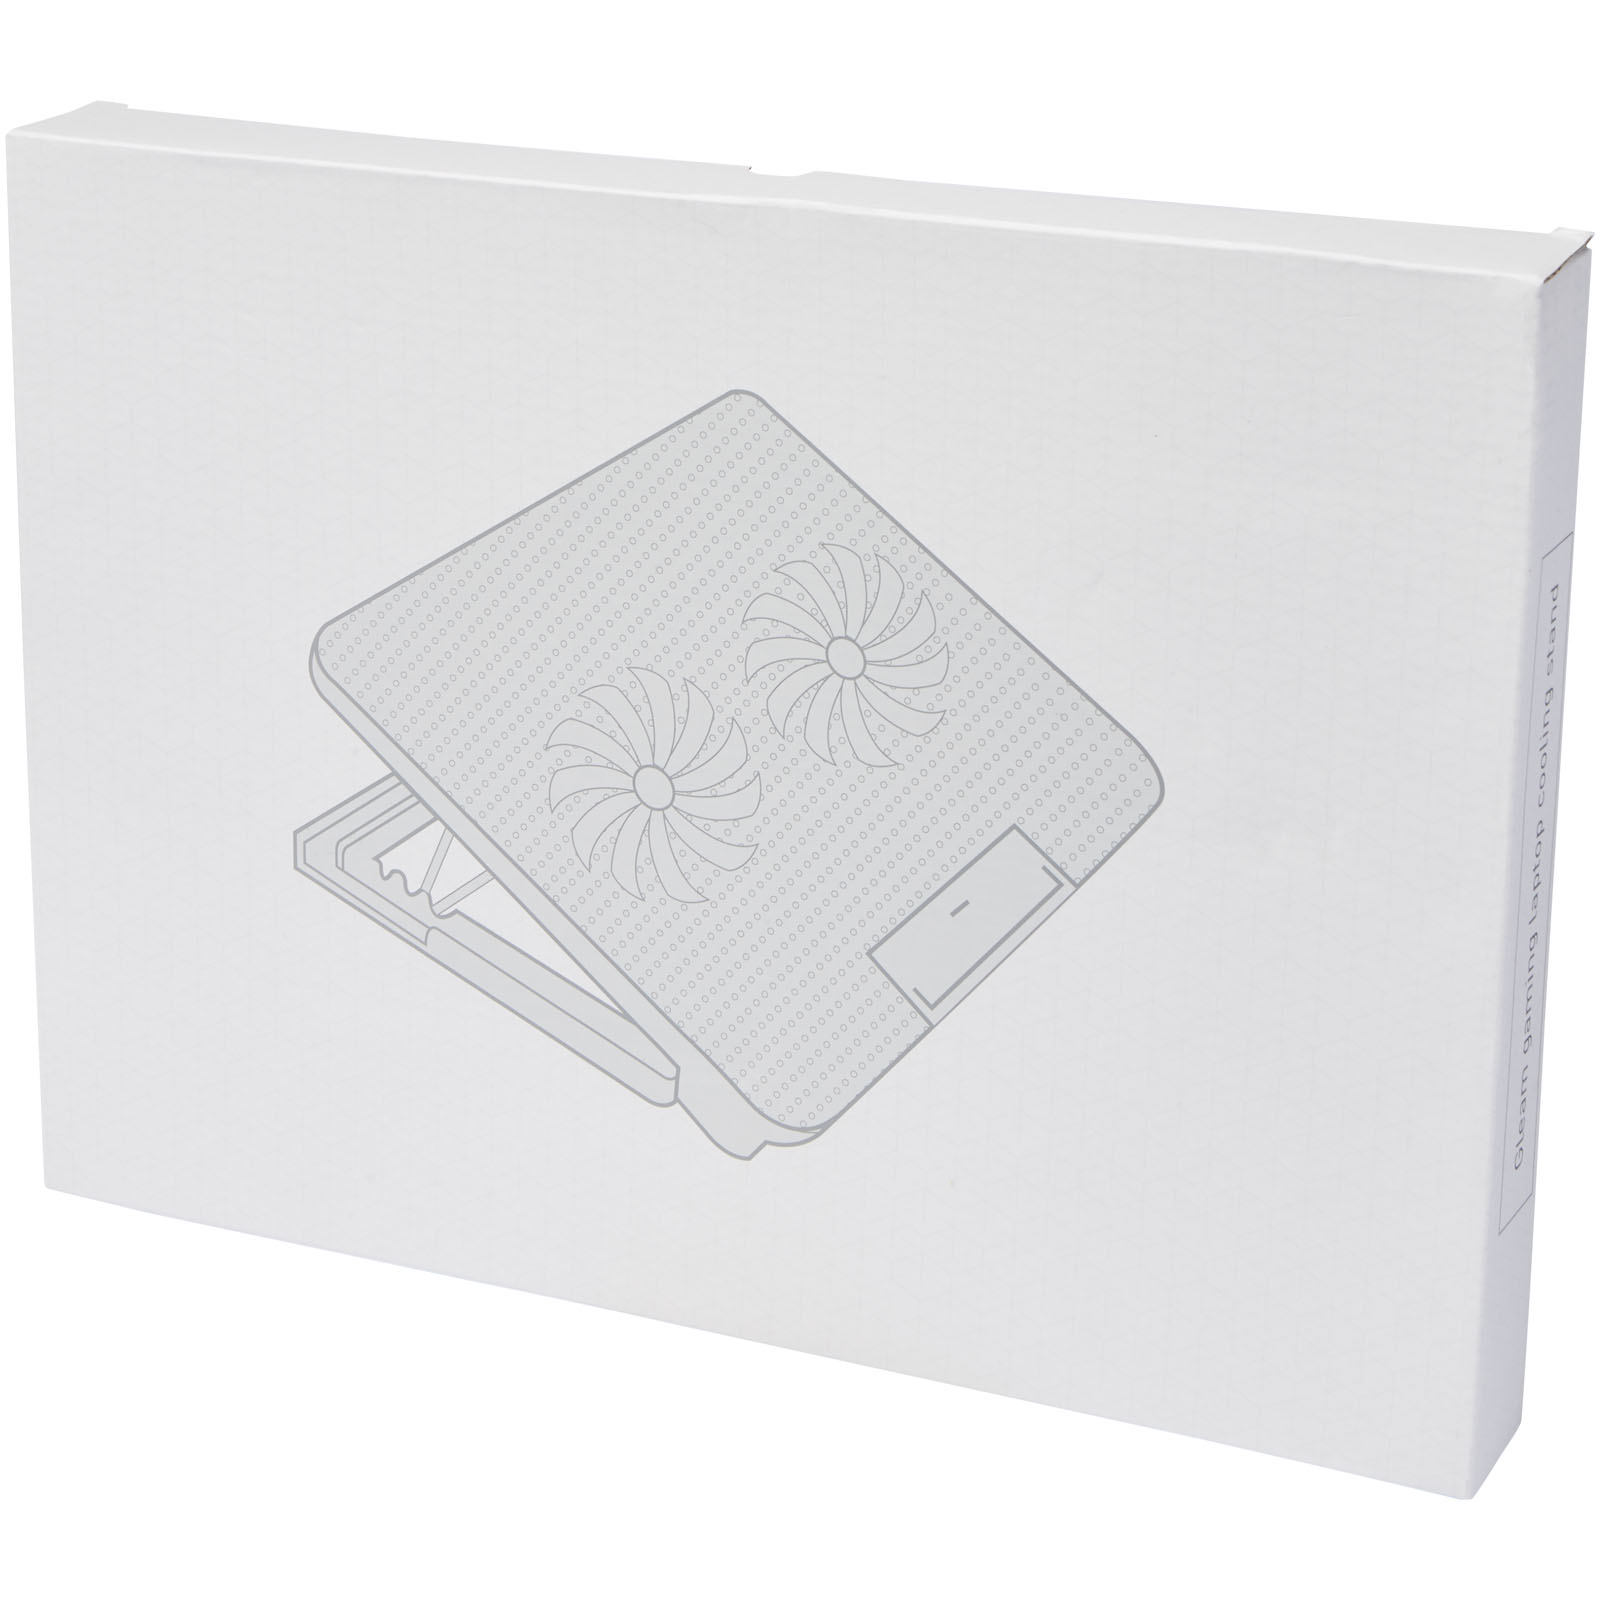 Accessoires pour ordinateur publicitaires - Support de refroidissement Gleam pour ordinateur portable de jeu - 1